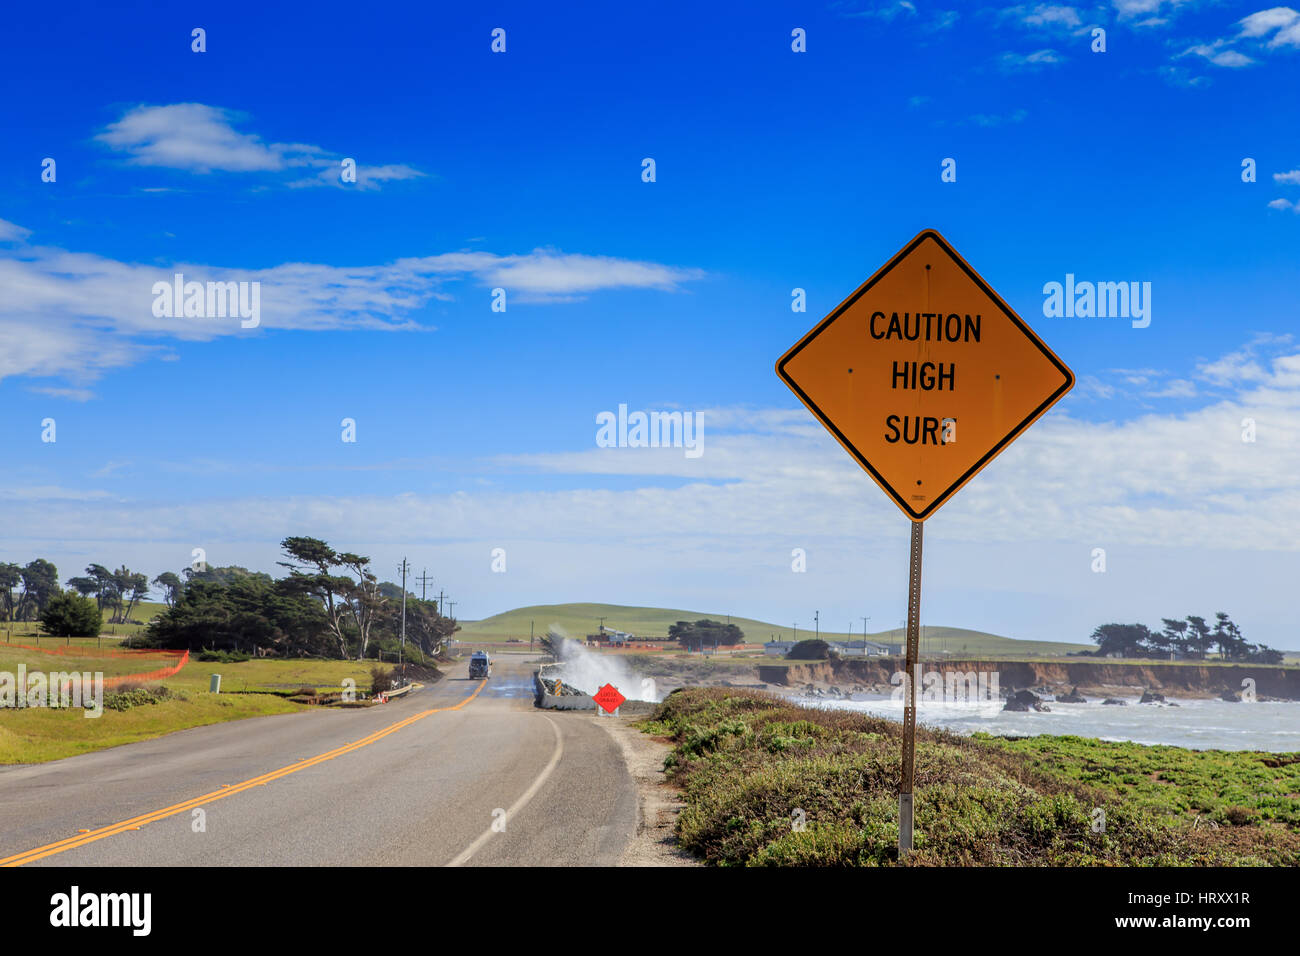 Vorsicht hohe Brandung Warnschild am Straßenrand der berühmten Highway 1 auf der zentralen Küste von Kalifornien USA Stockfoto